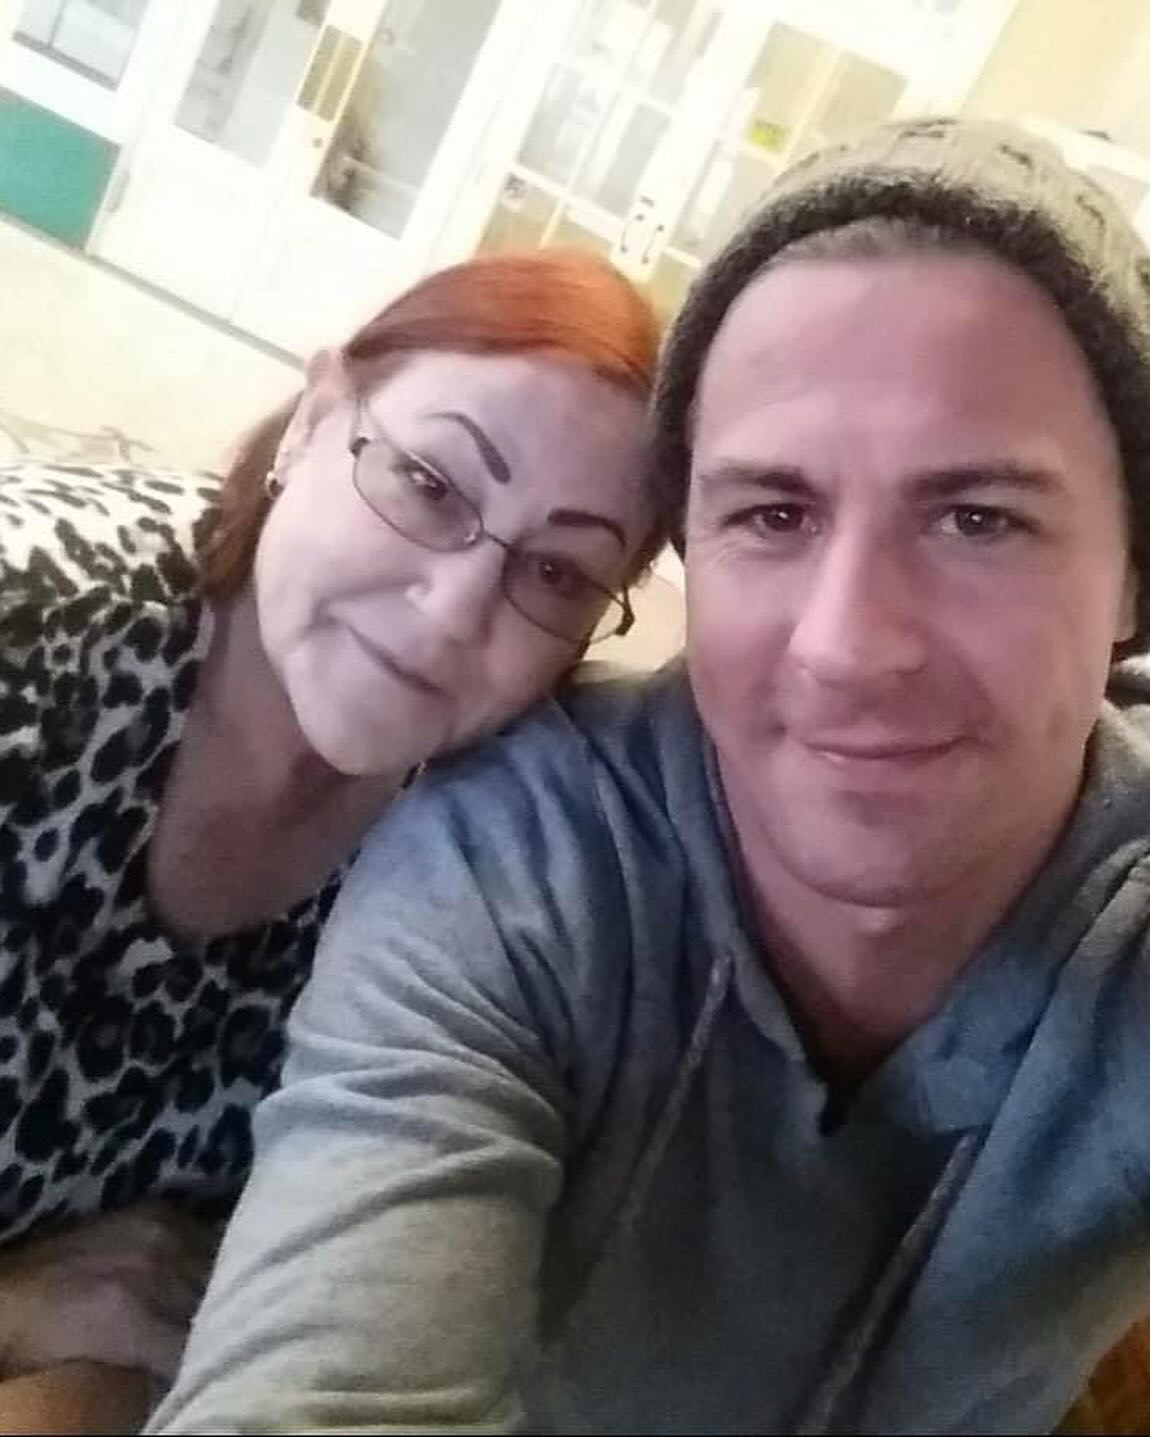 Der Skater hat auf Instagram ein süßes Bild mit seiner Mutter geteilt